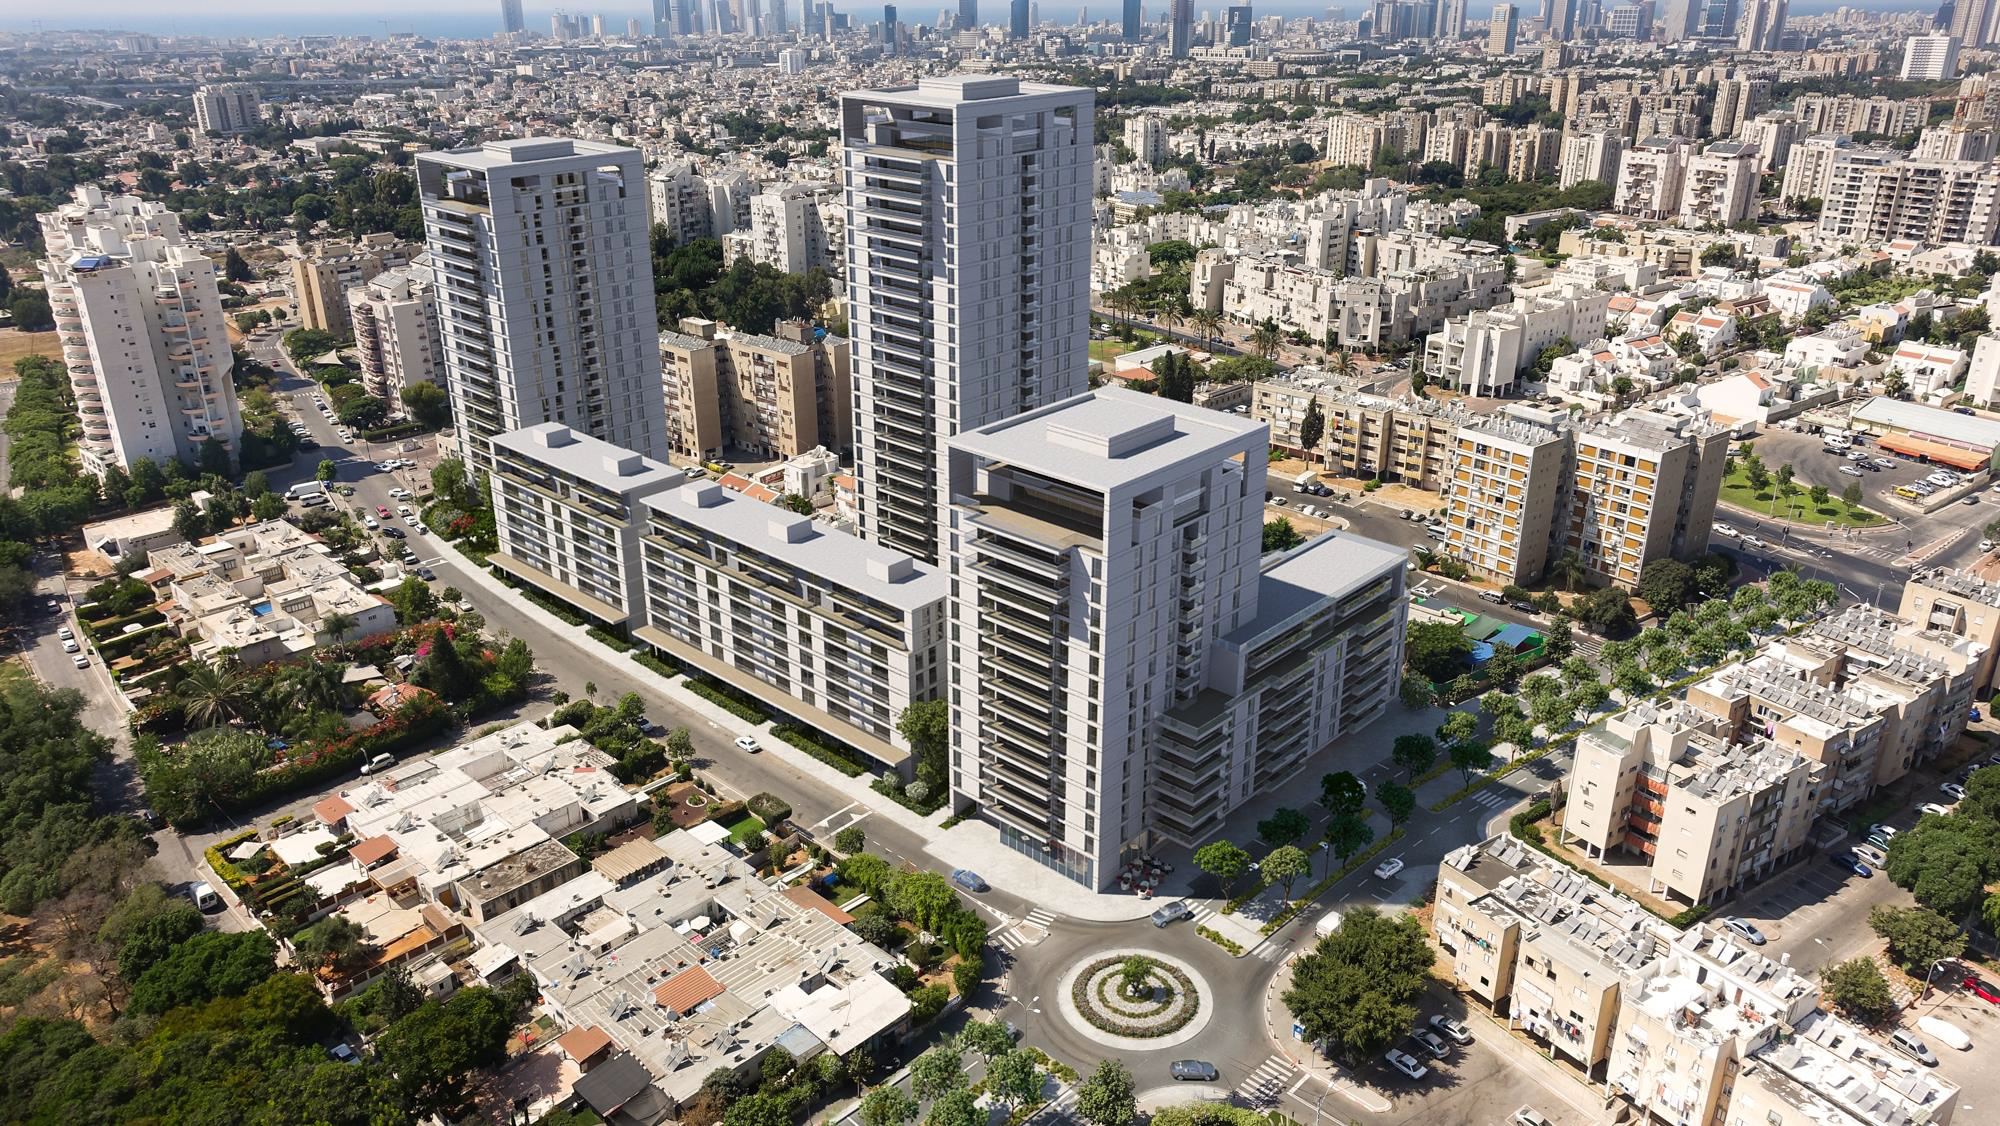 הוועדה המחוזית תל אביב החליטה לאשר תוכנית להתחדשות עירונית ברחוב הבשם בתל אביב 